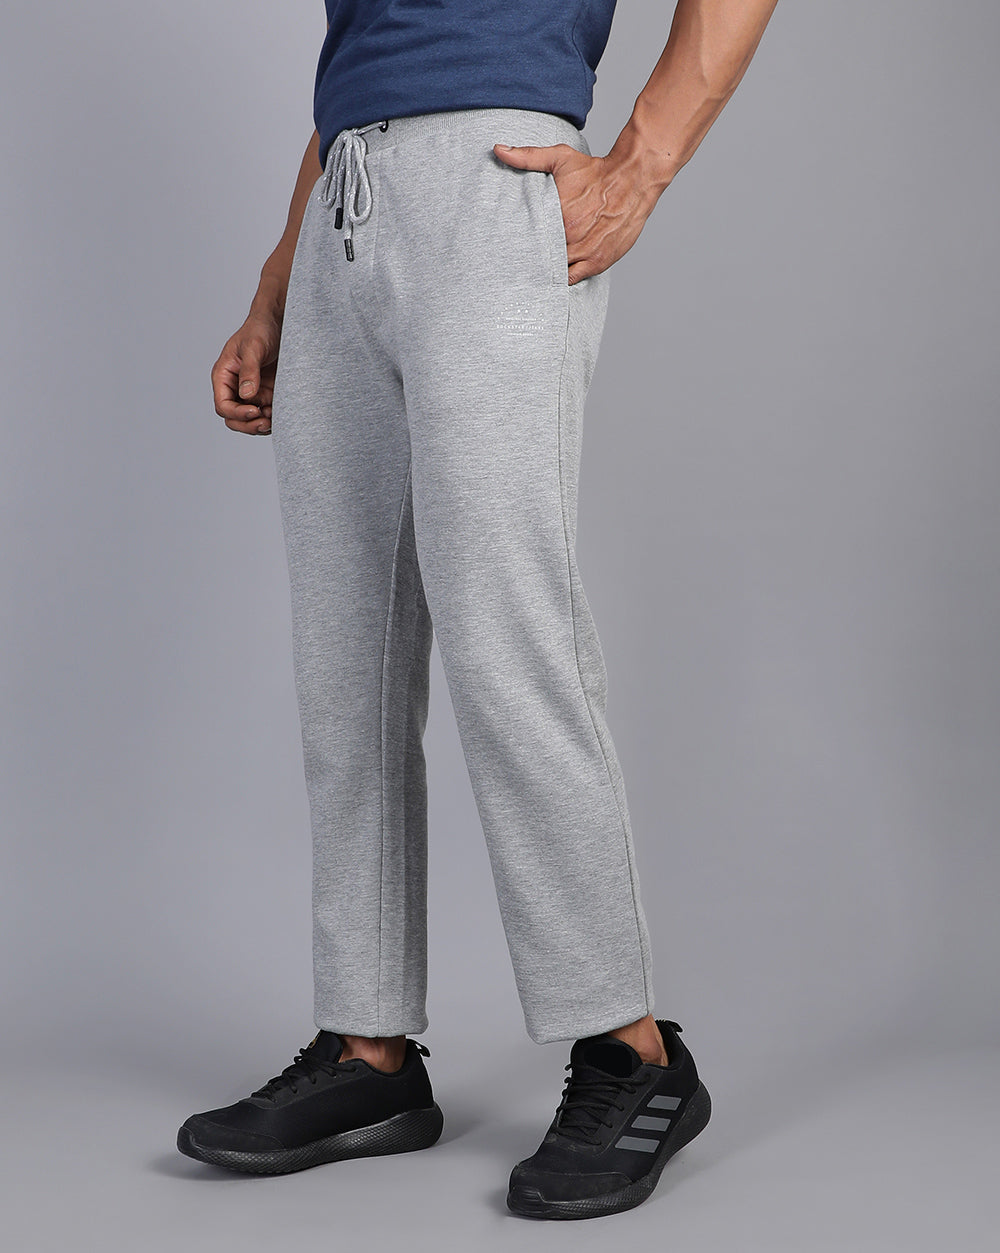 Grey Melange Comfort Track Pants